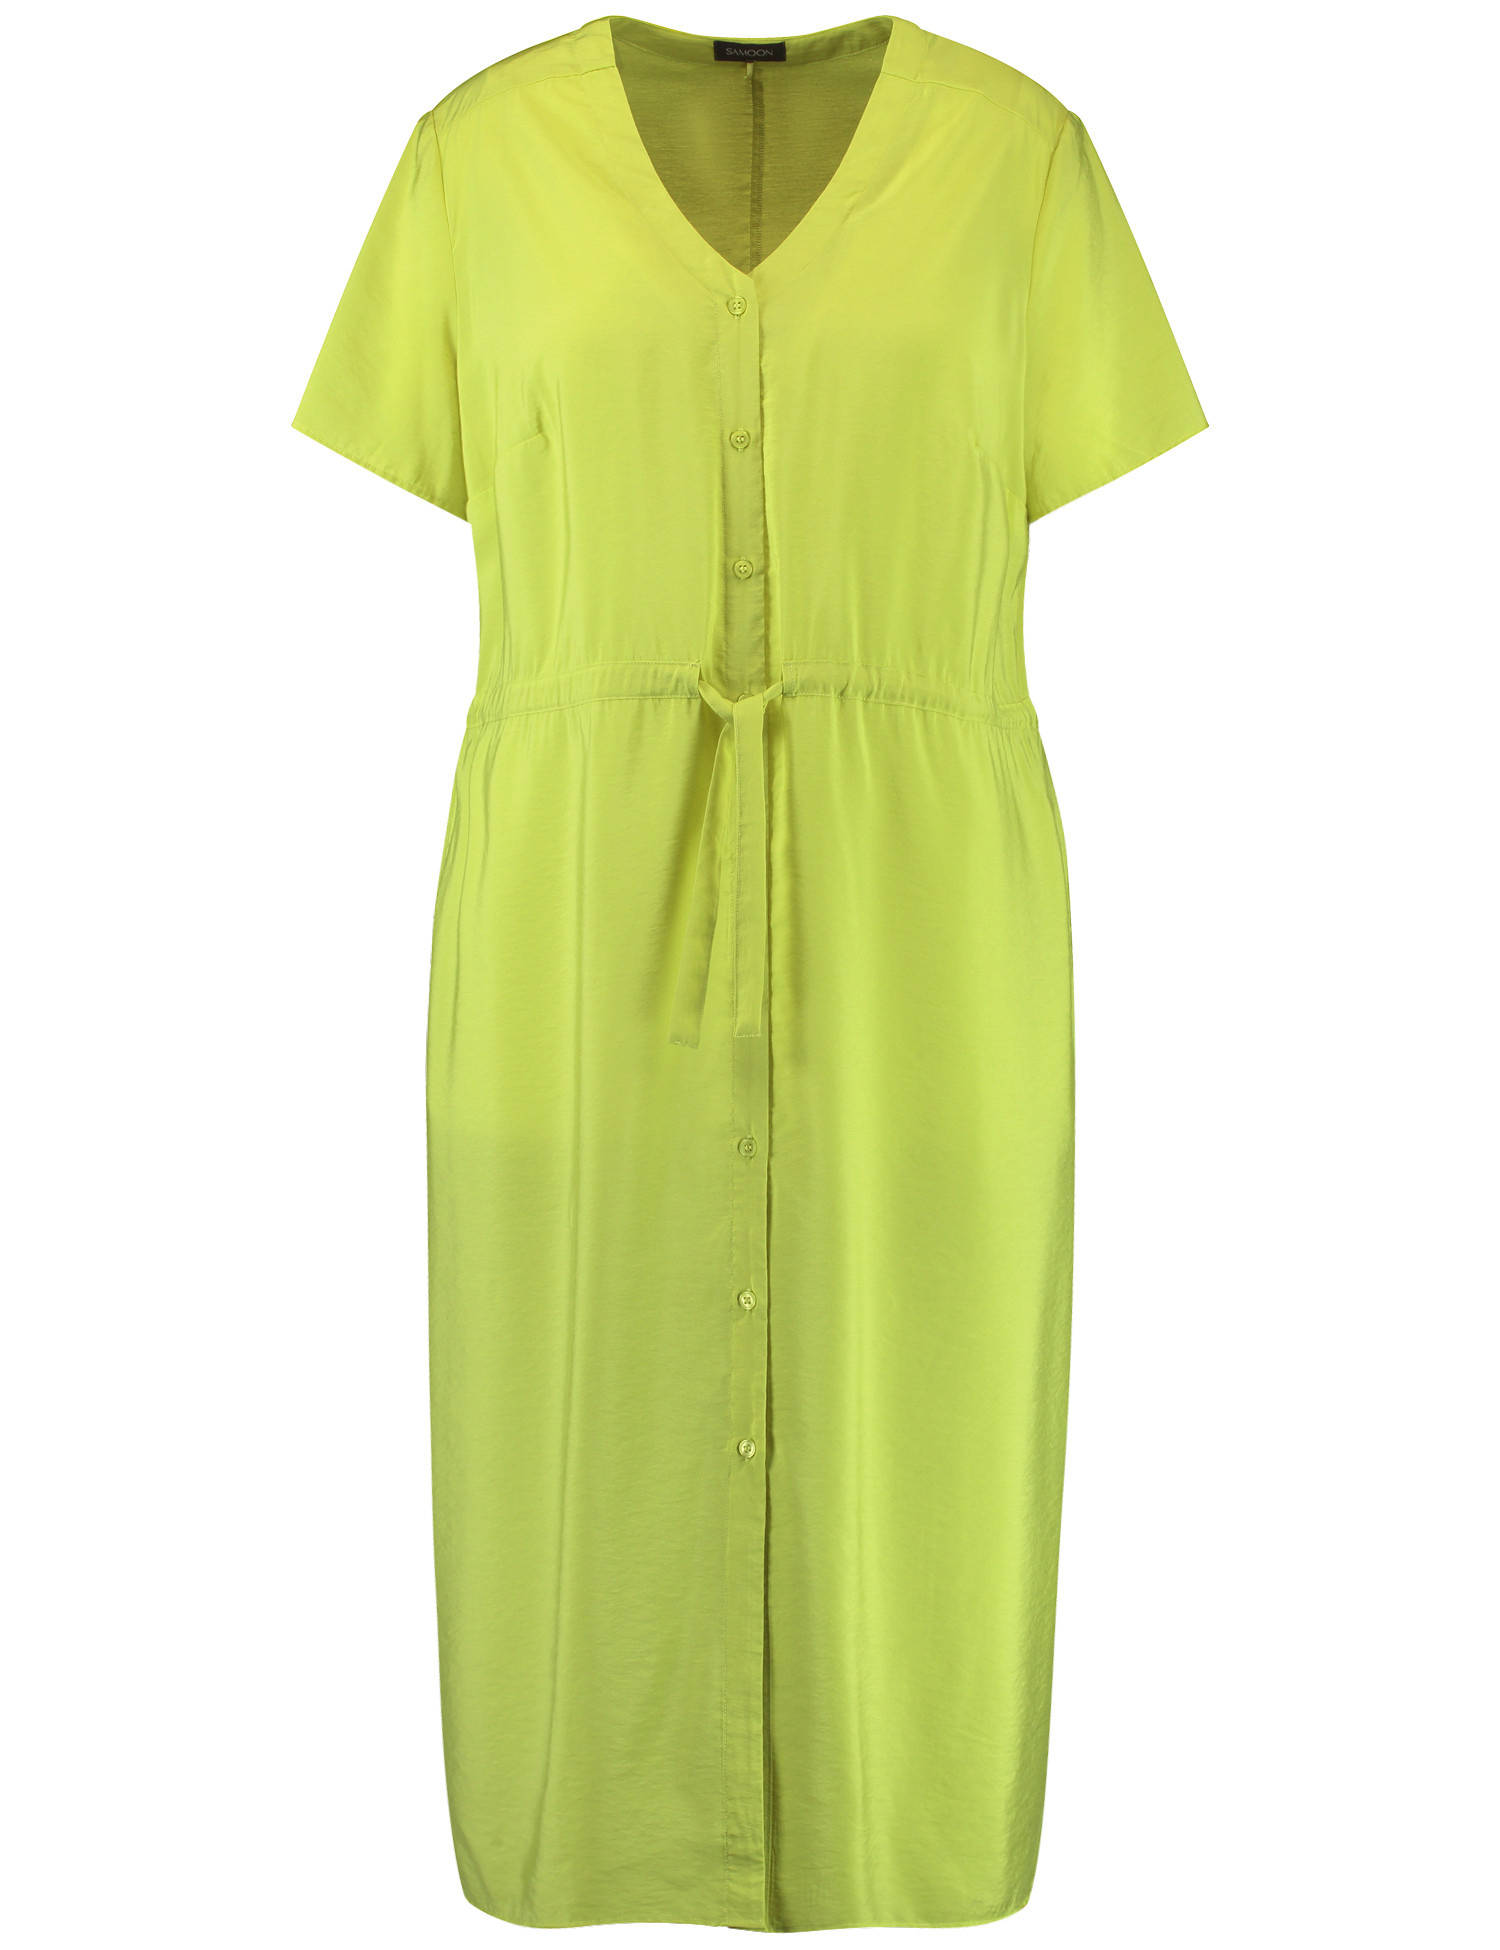 SAMOON Damen Sommerkleid in Midilänge Kurzarm V-Ausschnitt Viskose Grün, 52 von SAMOON